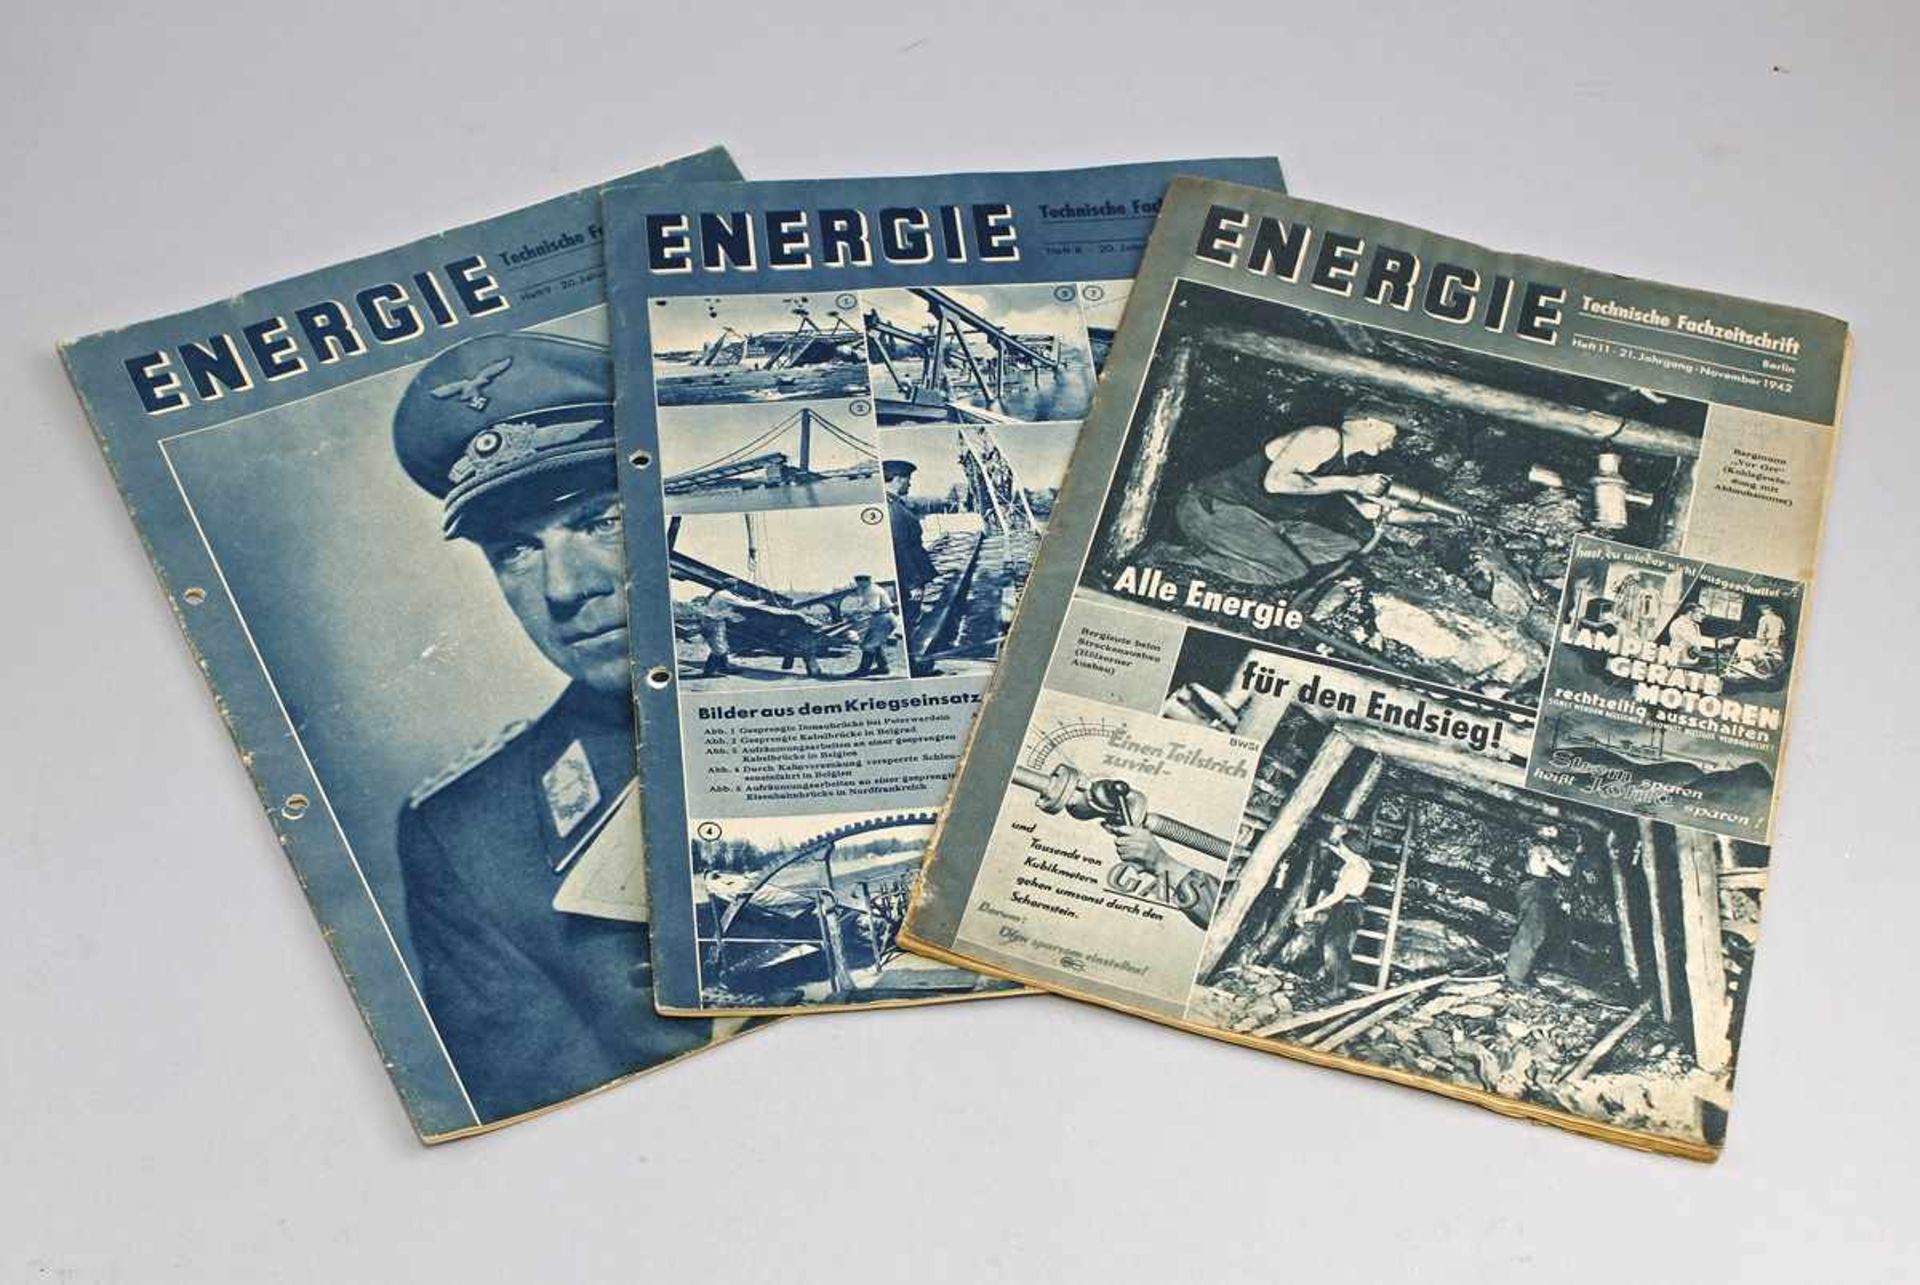 3 x Fachzeitschrift Energie Dr. Todt 1941/42 3. Reich, Hefte 8 u. 9 v. 1941 (gelocht), Heft 11 v.